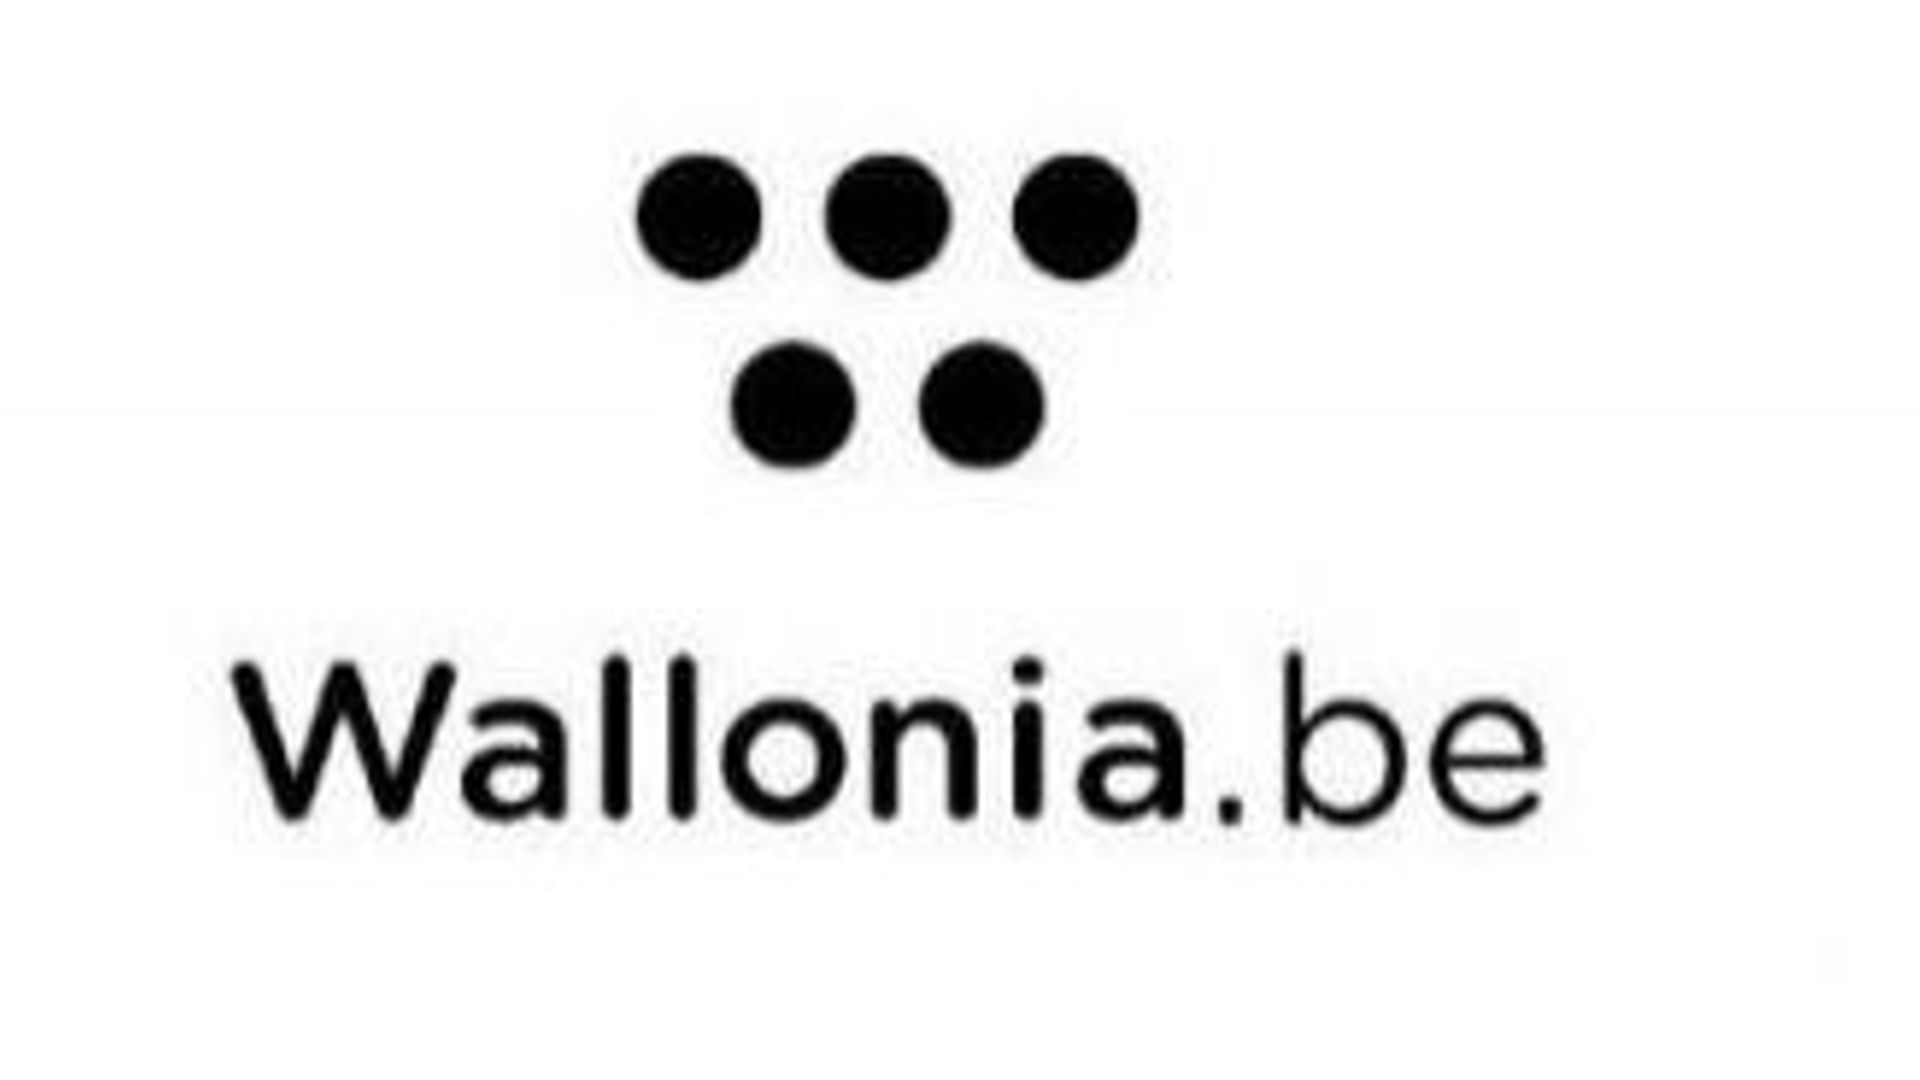 Le nouveau logo servira à promouvoir la Wallonie à l'étranger